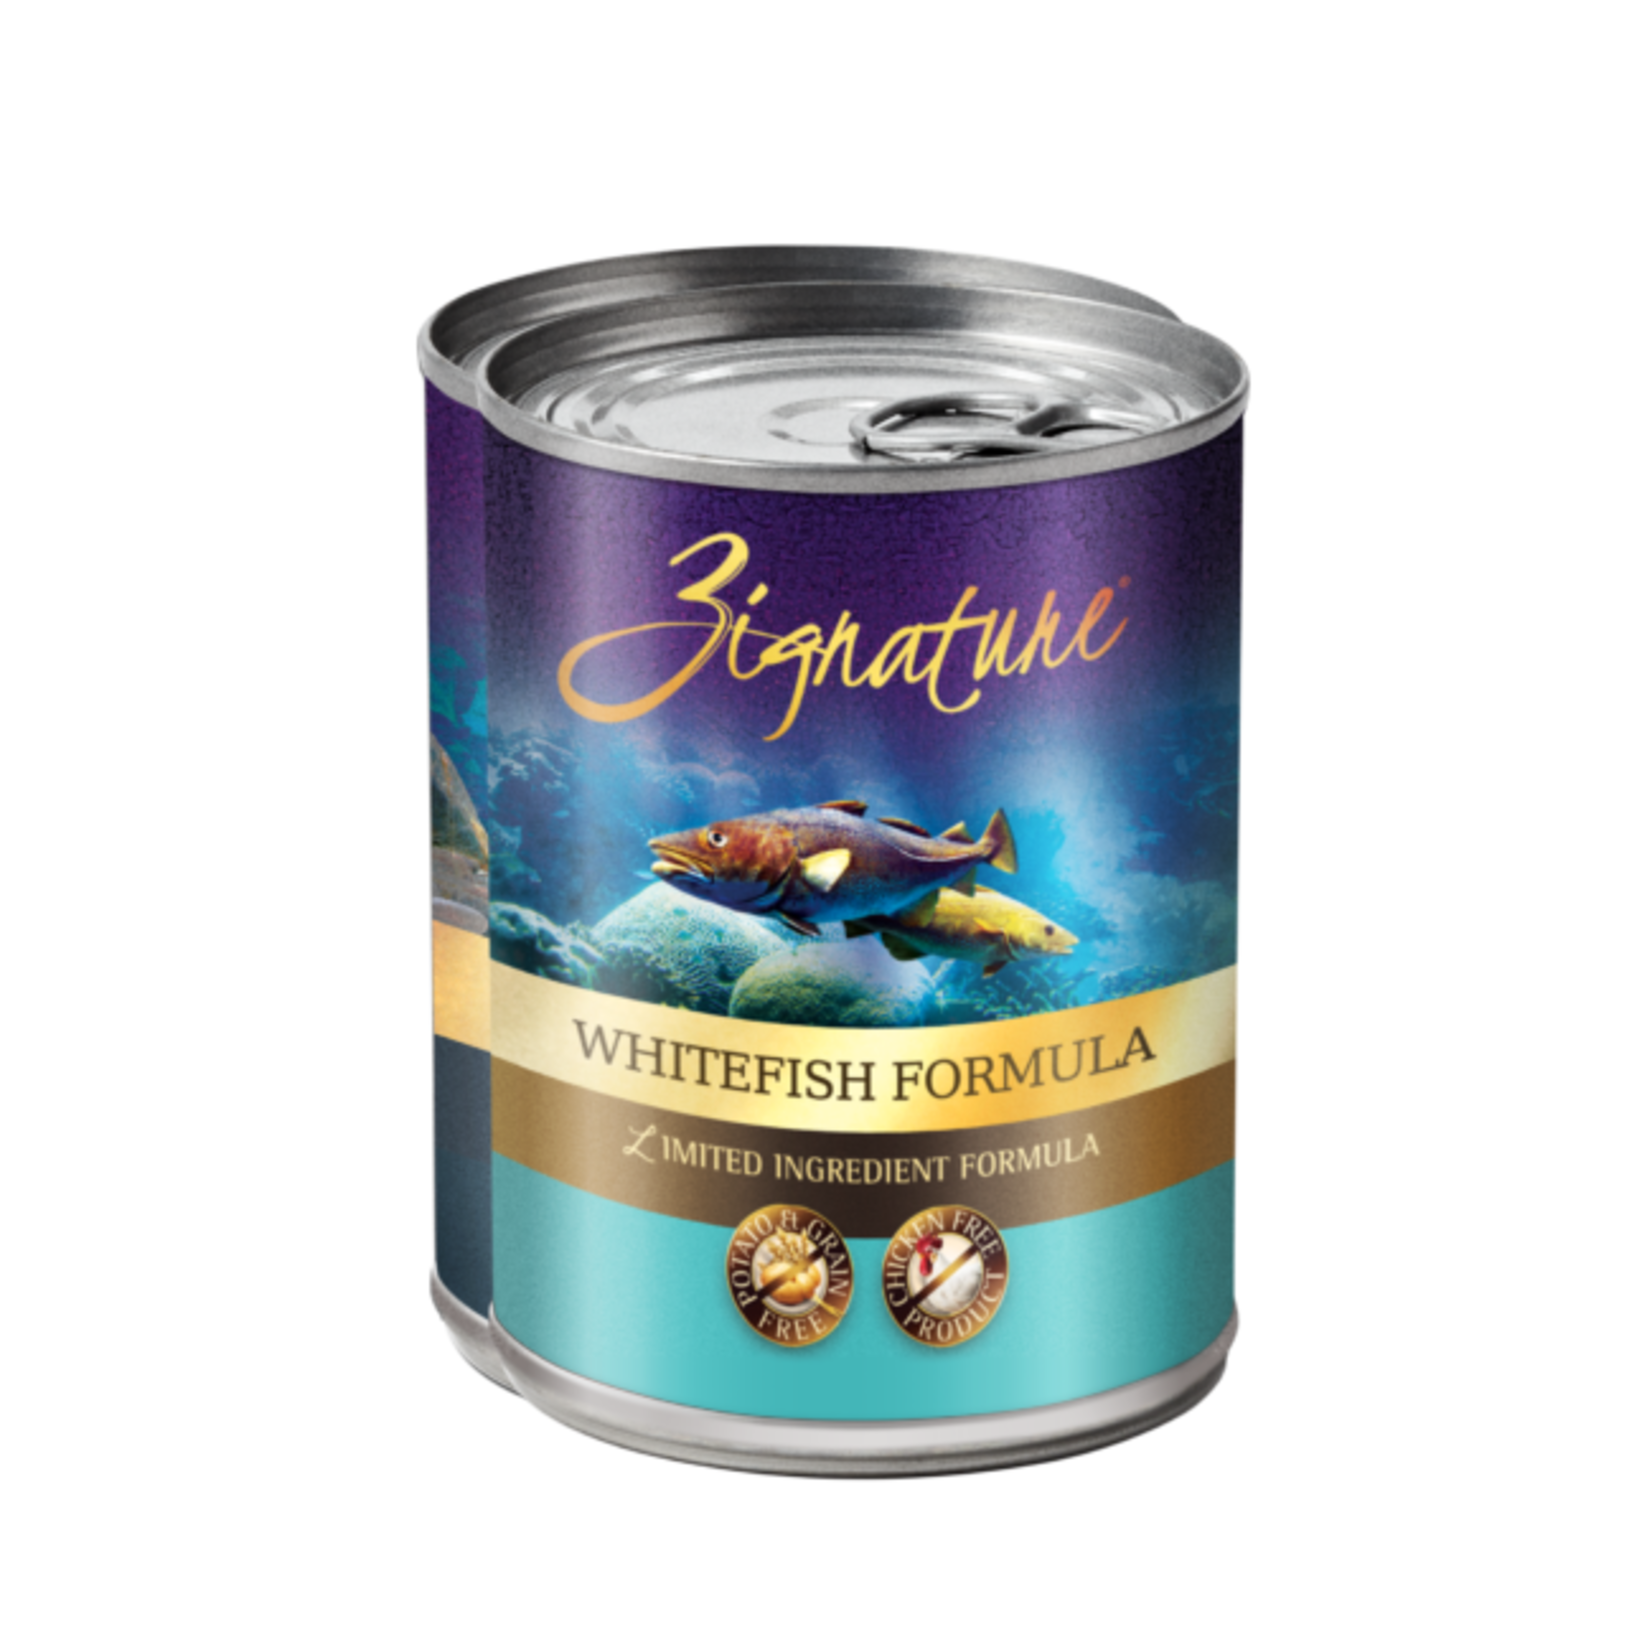 Zignature Zignature Wet Dog Food Whitefish Formula 13oz Can Limited Ingredient Formula Grain Free